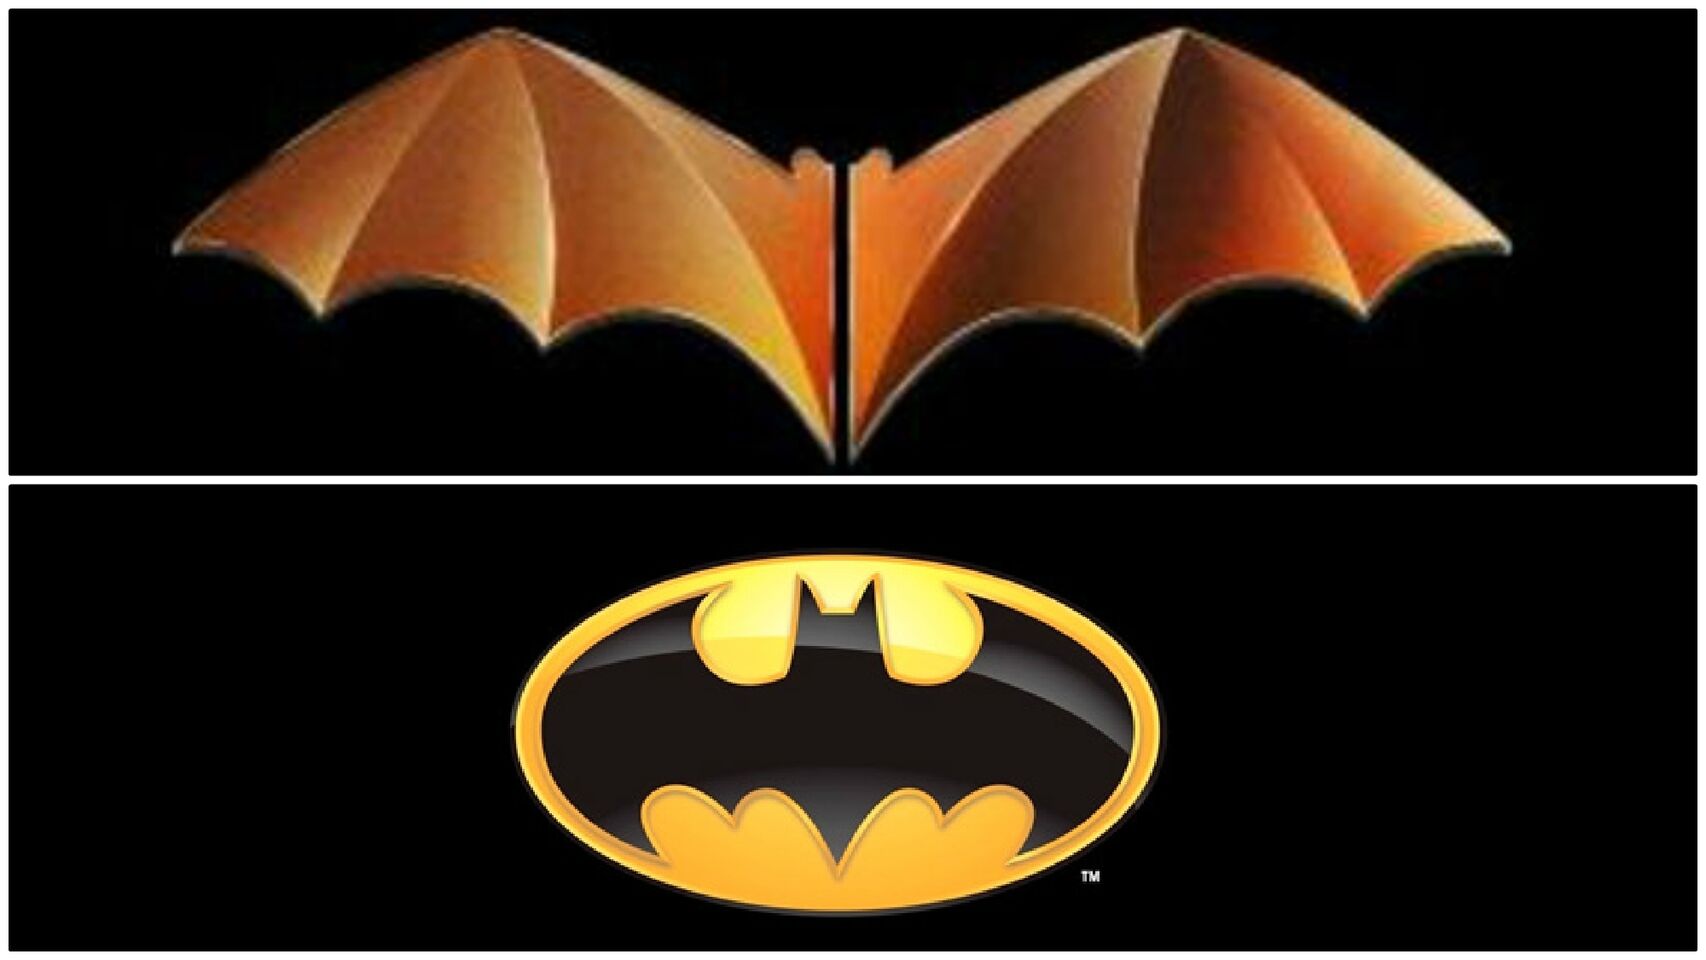 Valencia denunciata per il simbolo di Batman nel logo thumbnail